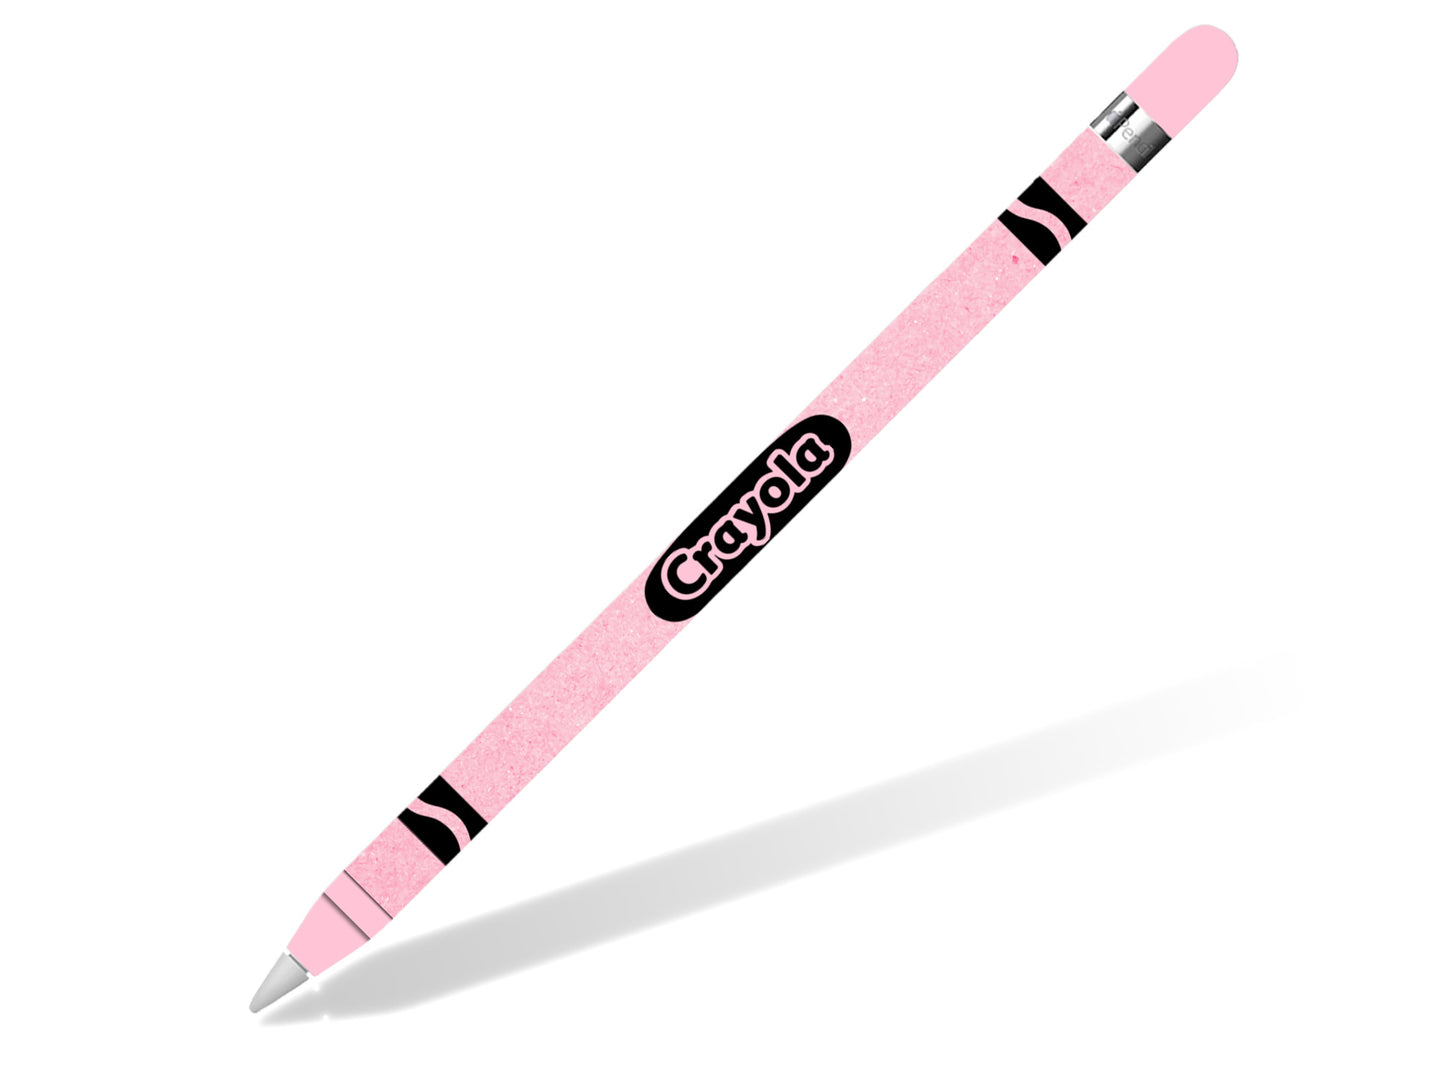 Crayon Style Pastel Pink Apple Pencil Skin